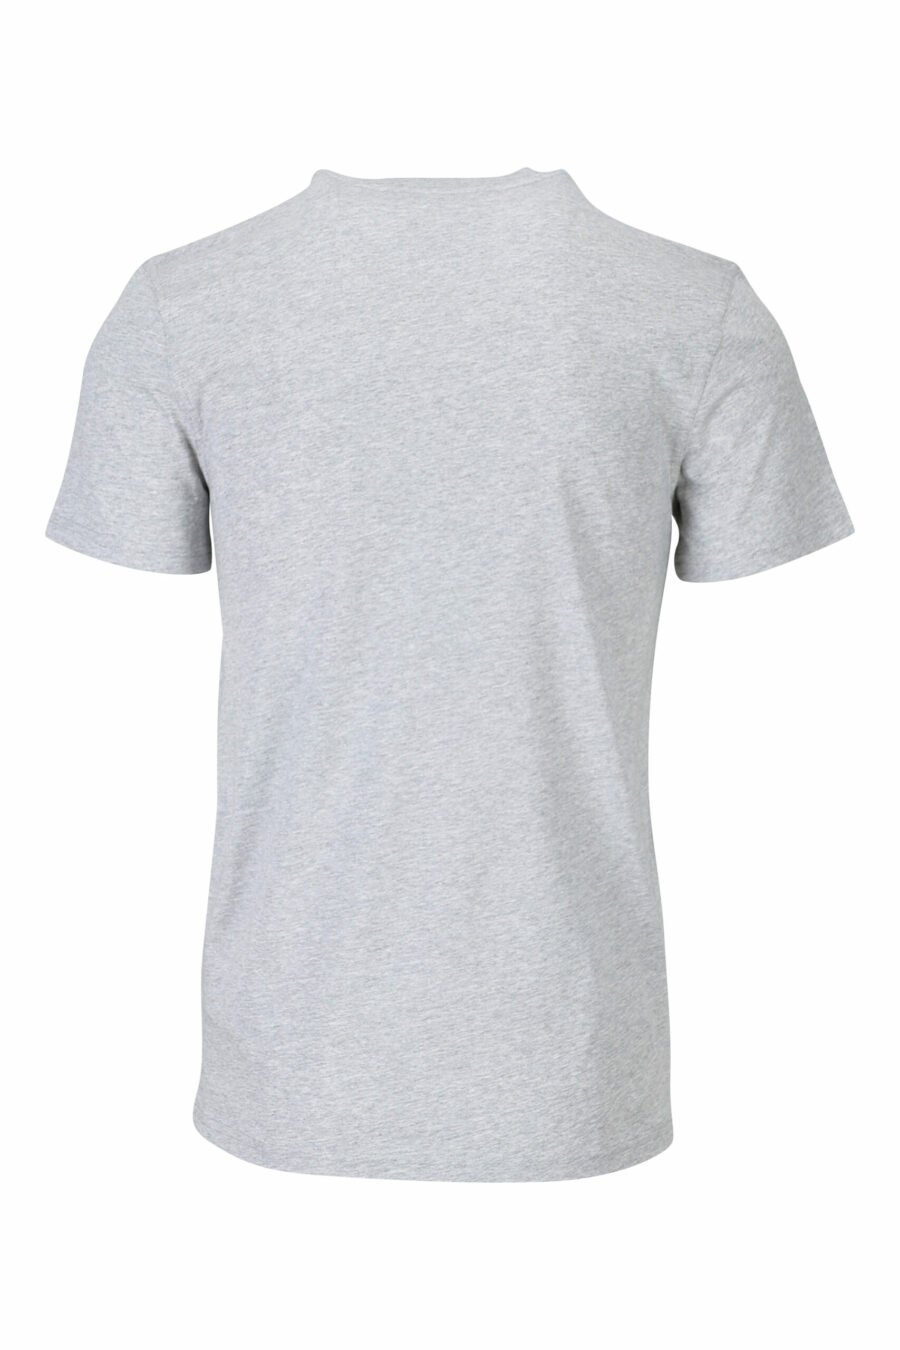 T-shirt cinzenta com maxilogo "teddy" feito à medida - 667113124766 1 à escala